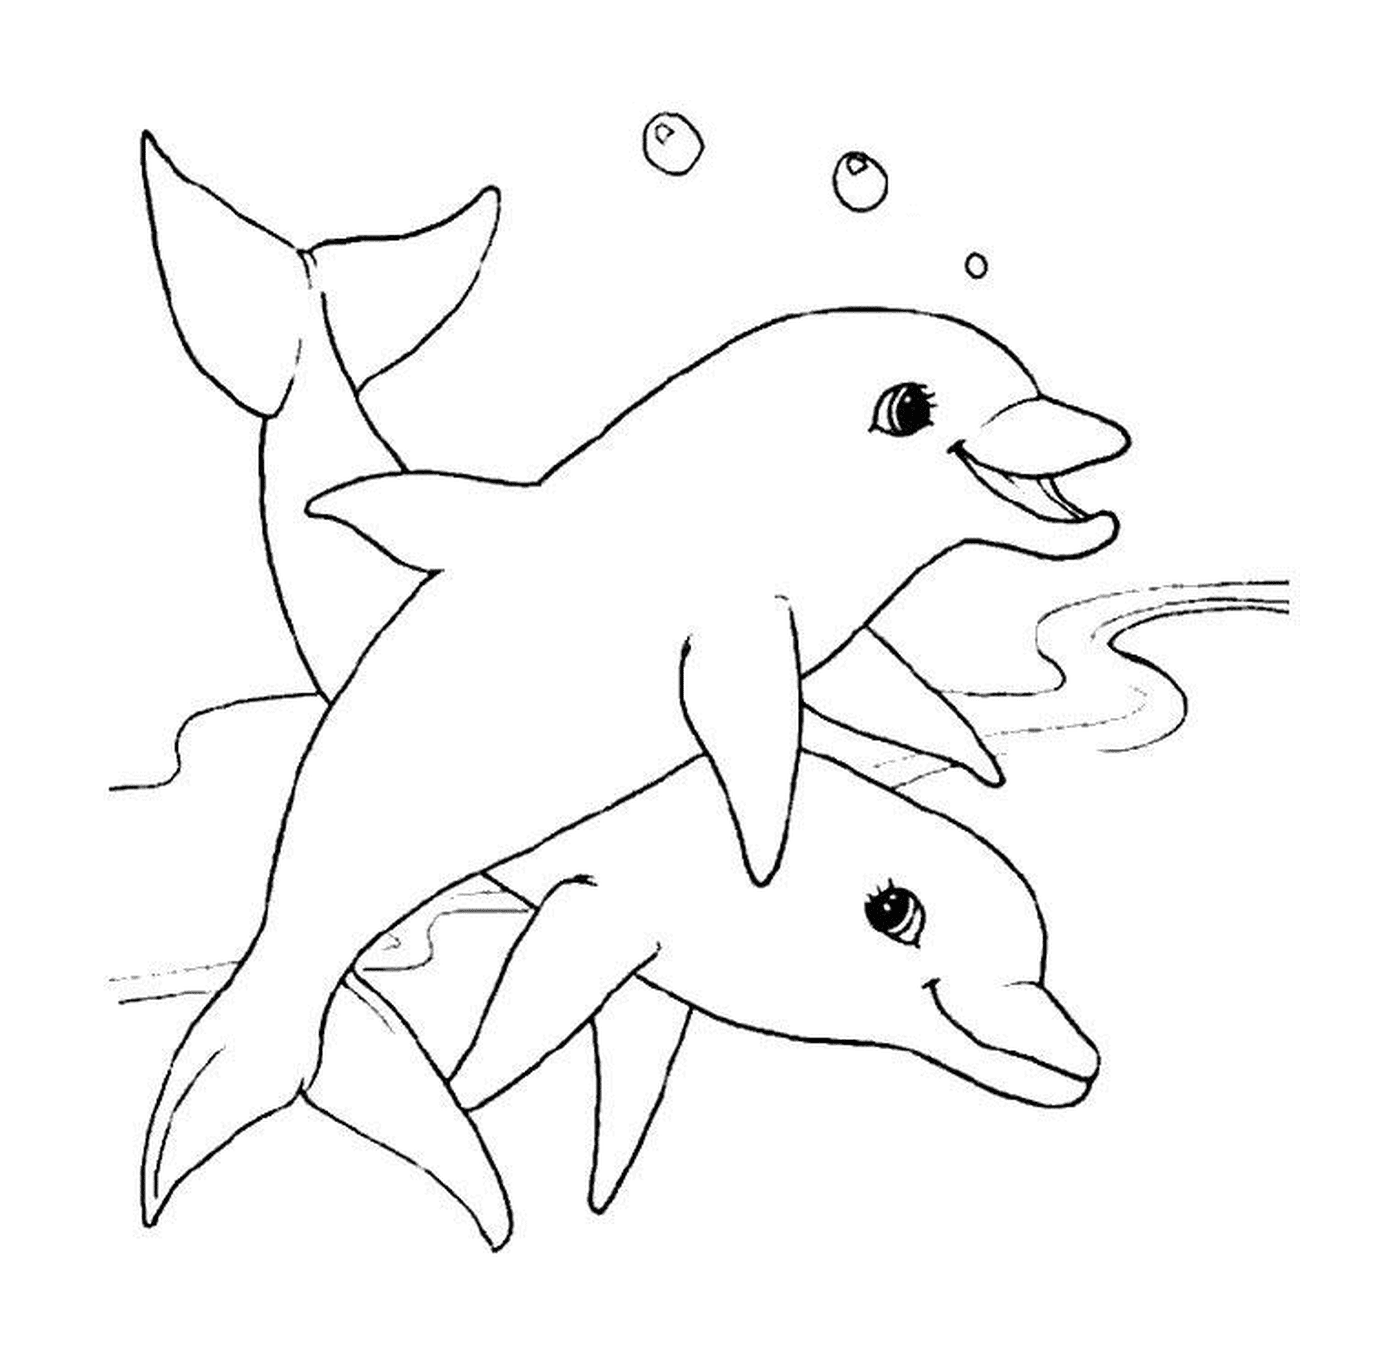  Два дельфина черно-белые 